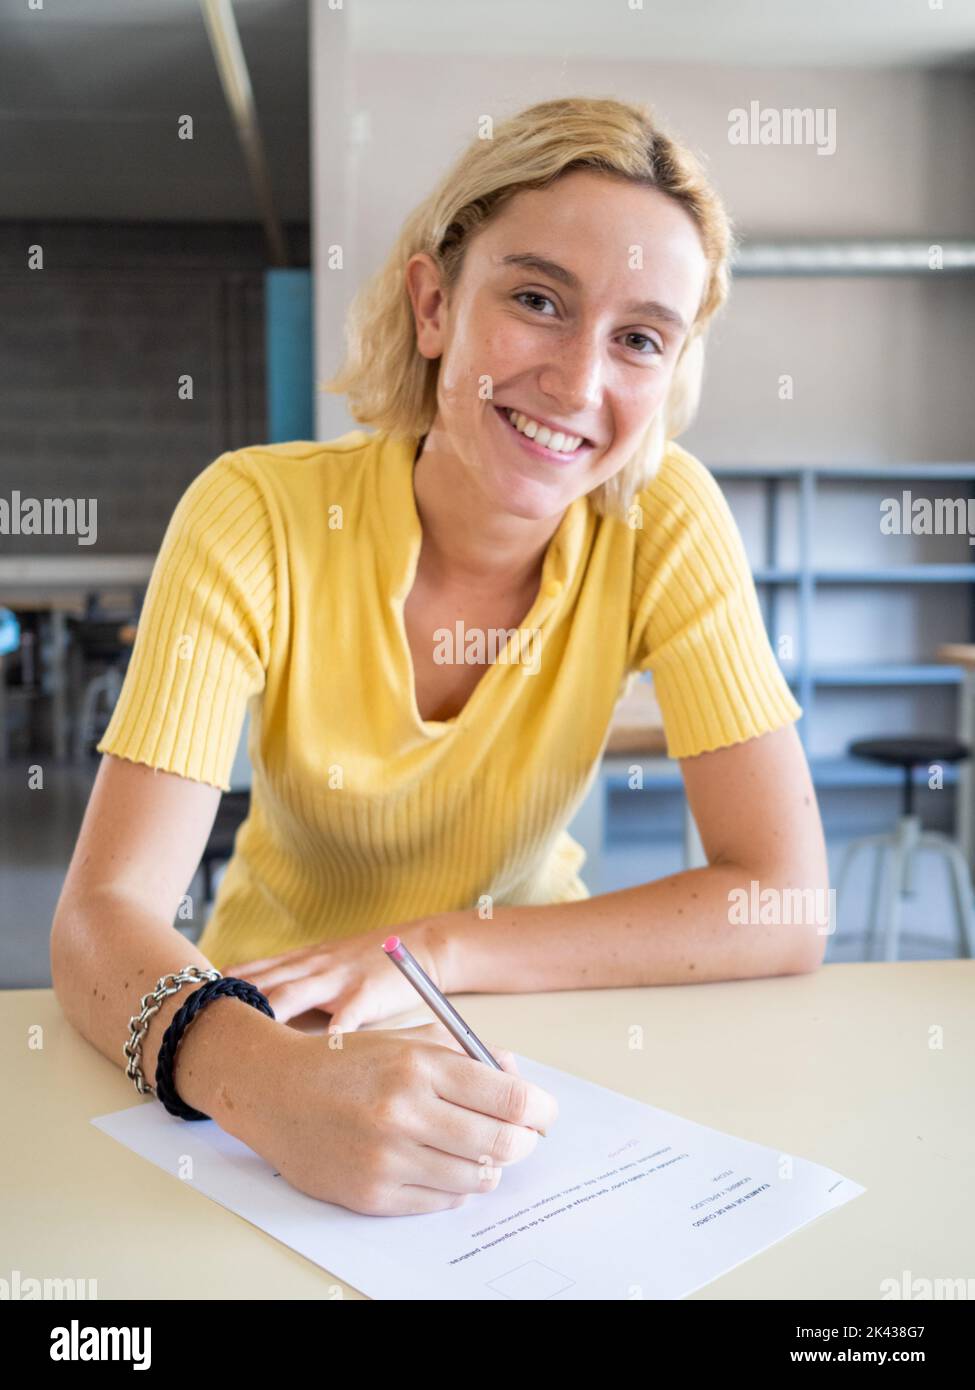 Porträt eines lächelnden jungen kaukasischen blonden Schülers, der in einem Klassenzimmer die Kamera anschaut, während er auf Papier schreibt. Bildung, Gymnasium Stockfoto